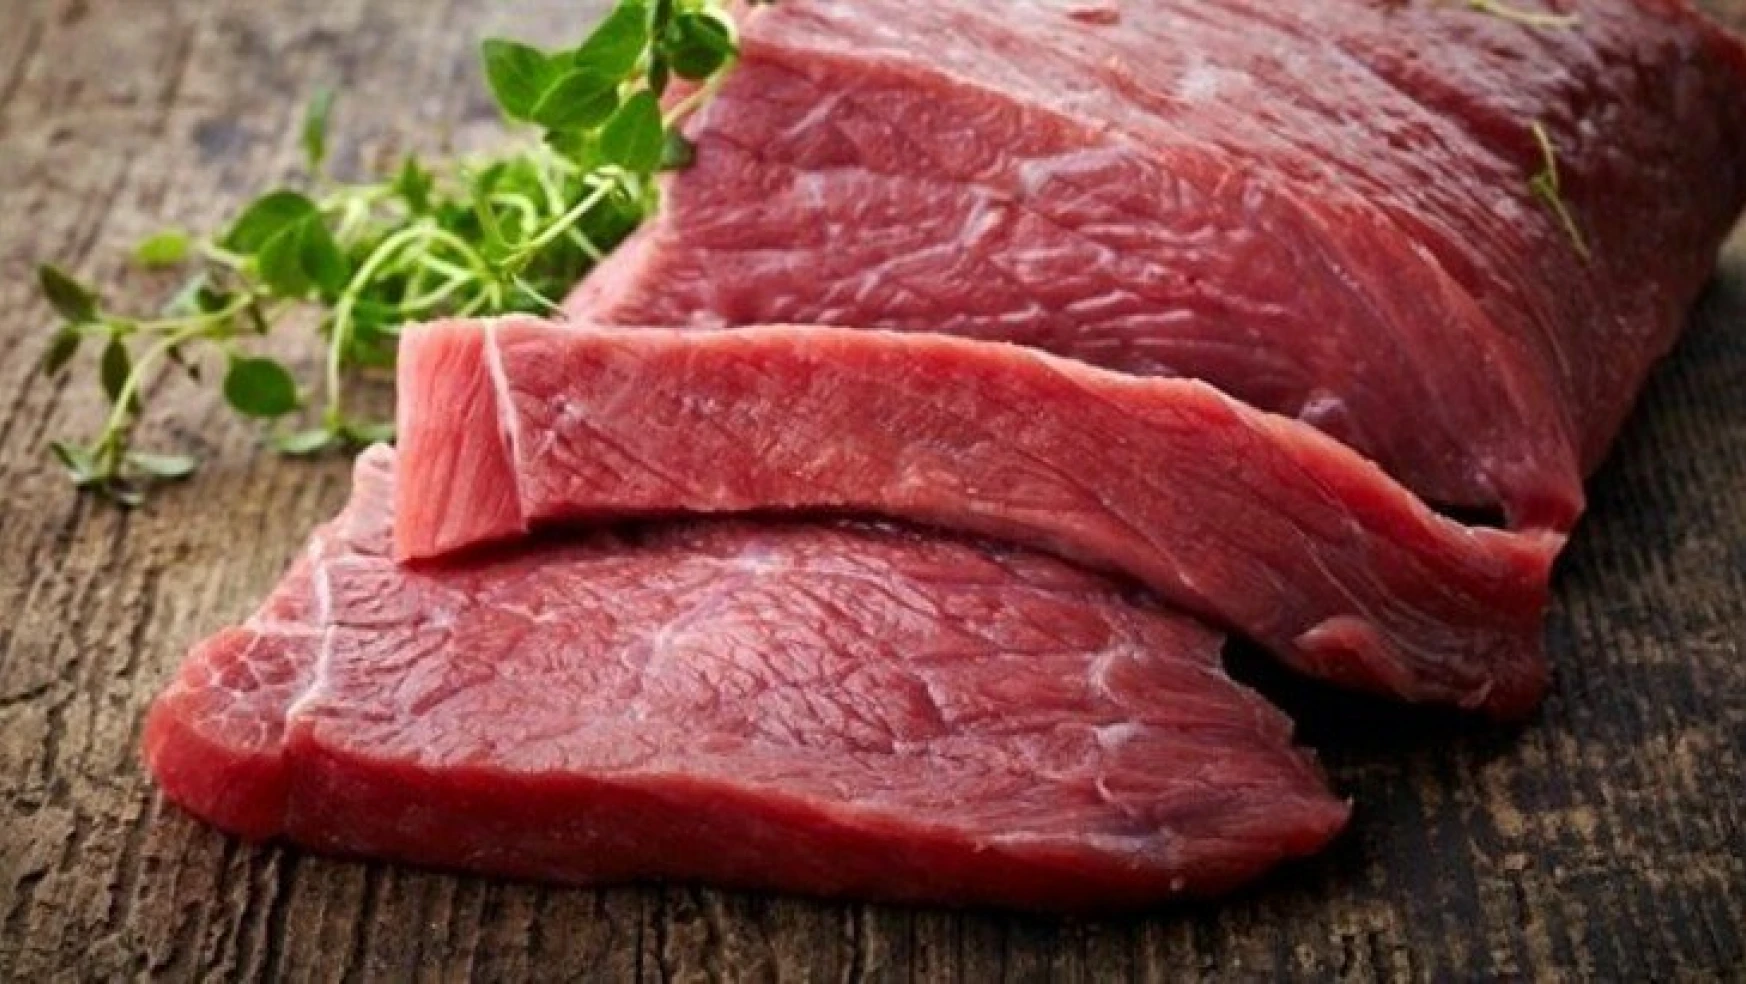 Kırmızı eti haftada 500 gramdan fazla tüketmeyin